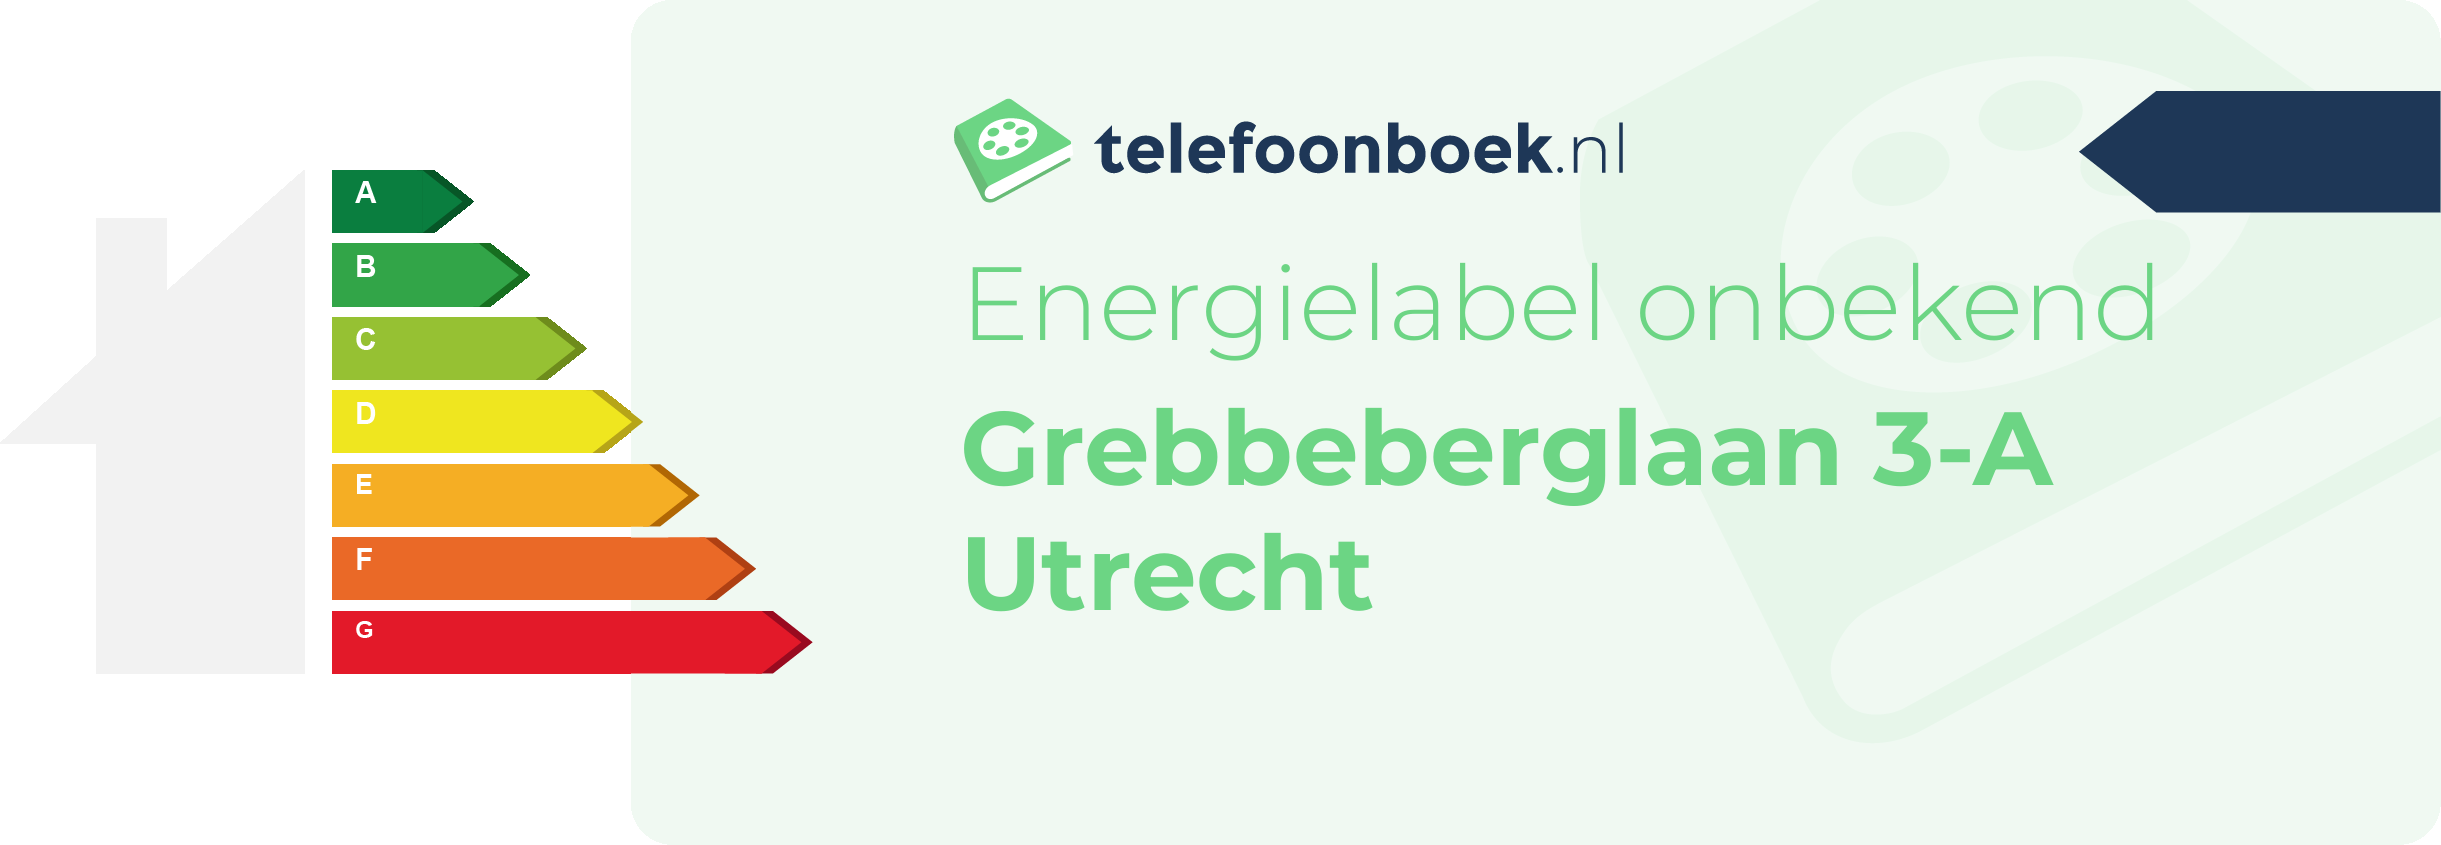 Energielabel Grebbeberglaan 3-A Utrecht